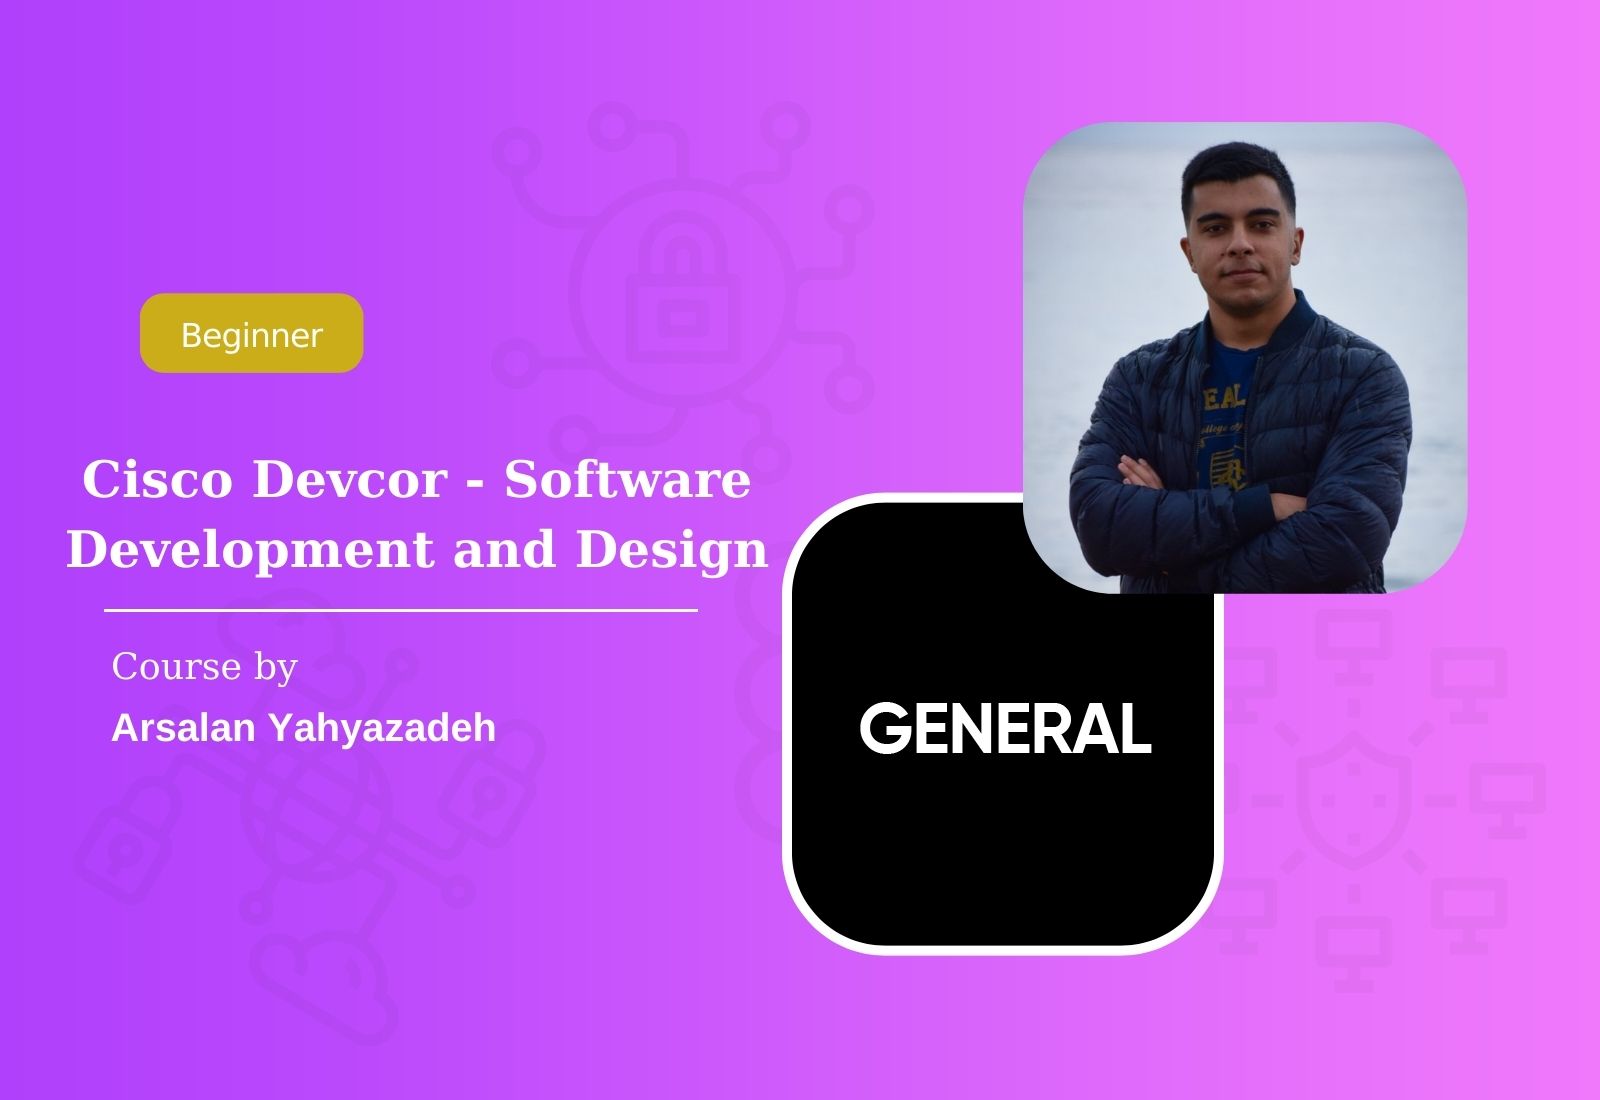 Cisco Devcor - Software Development and Design